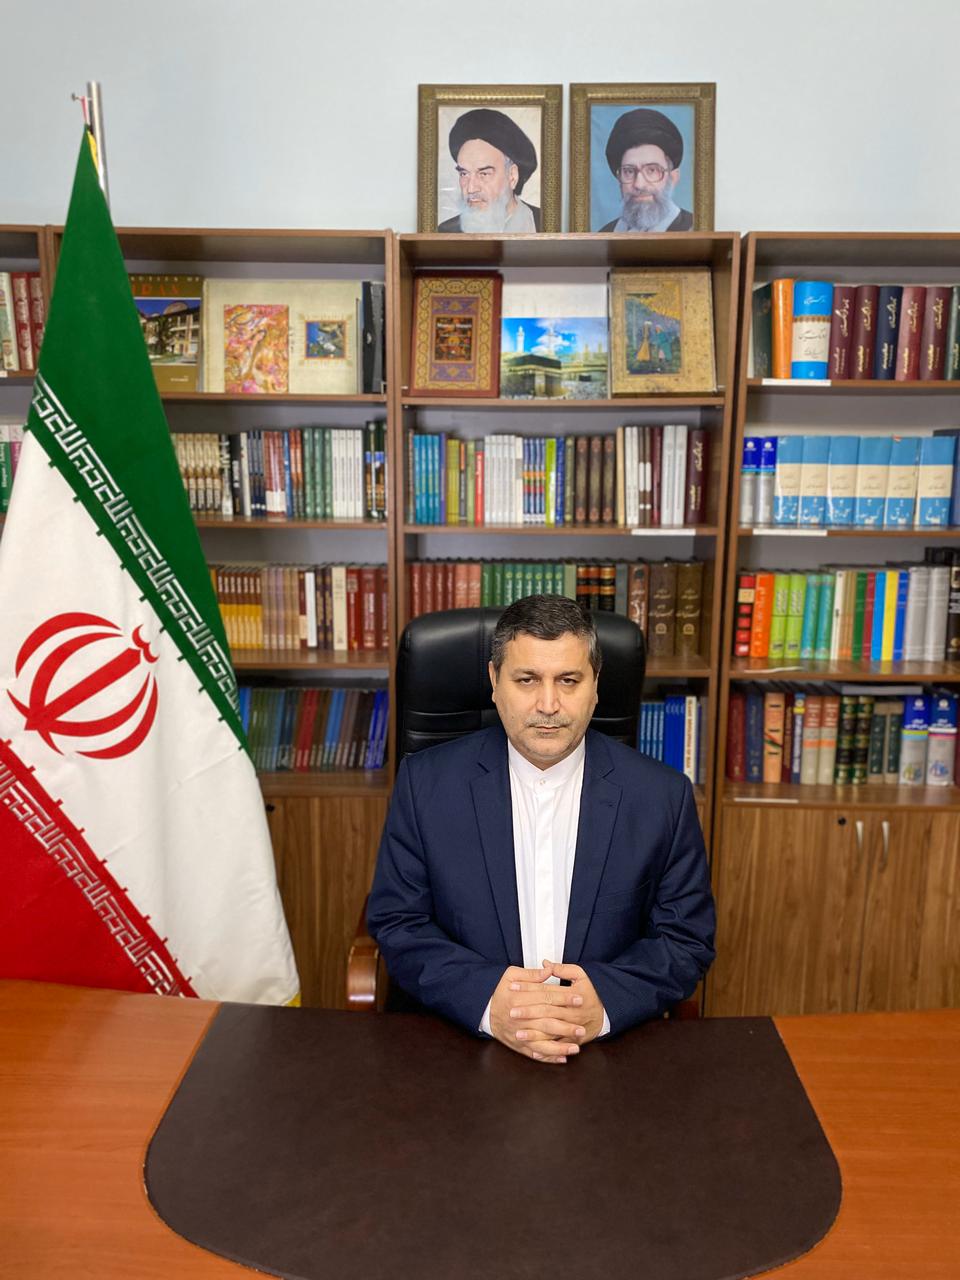 Әли Әкбар Талеби МАТИН: Наурыз – Қазақстан мен Иран арасындағы алтын көпір